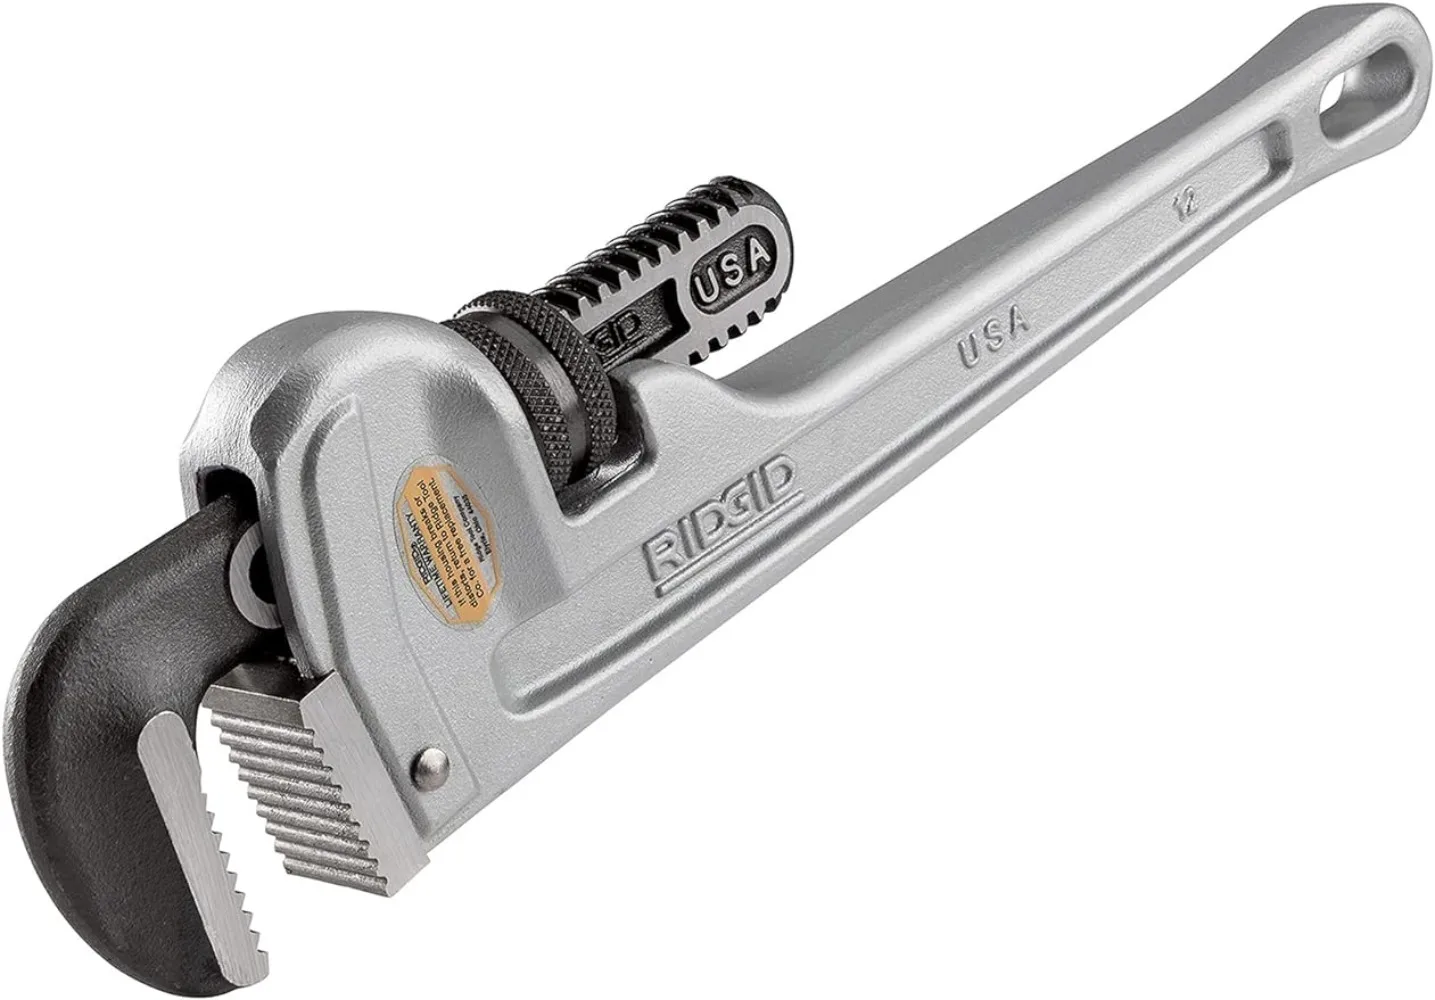 

Алюминиевый прямой трубный ключ RIDGID 47057, прочный Сантехнический ключ 12 дюймов с самоочищающимися нитями и челюстями крючка